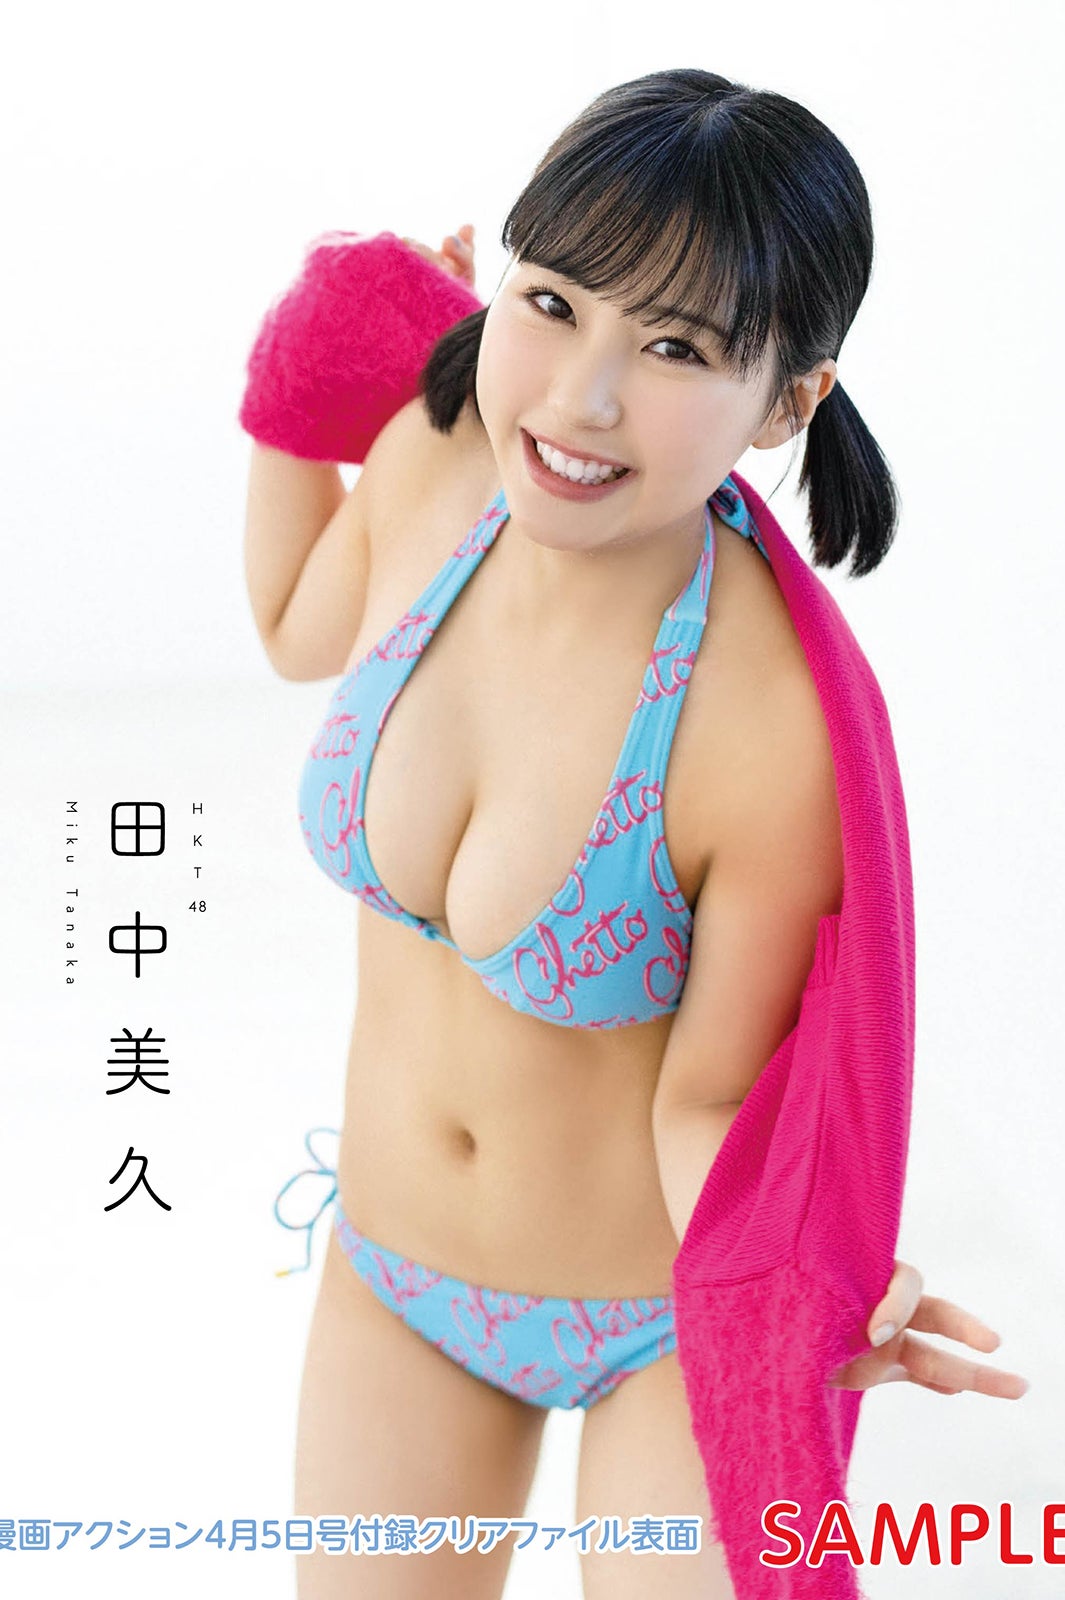 HKT48田中美久、美バストにうっとり 輝く笑顔で魅了 - モデルプレス